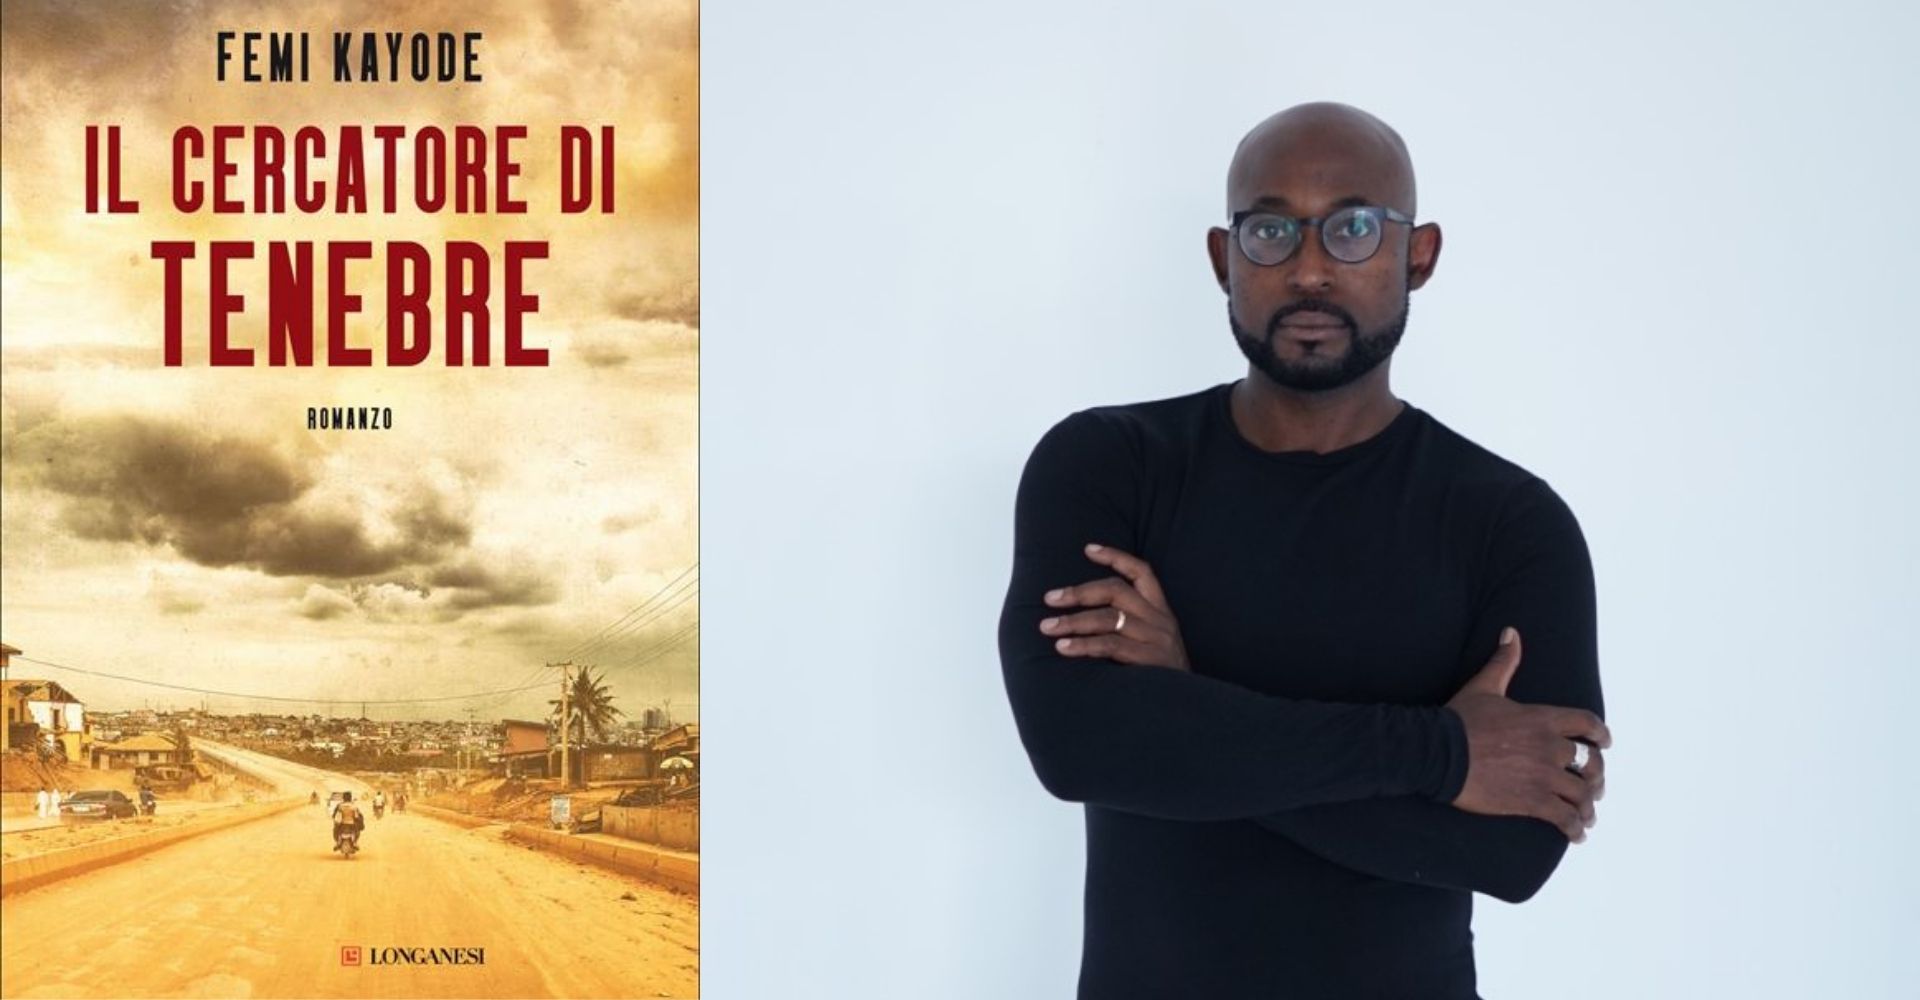 "Il cercatore di tenebre", un thriller sui segreti inconfessabili della Nigeria